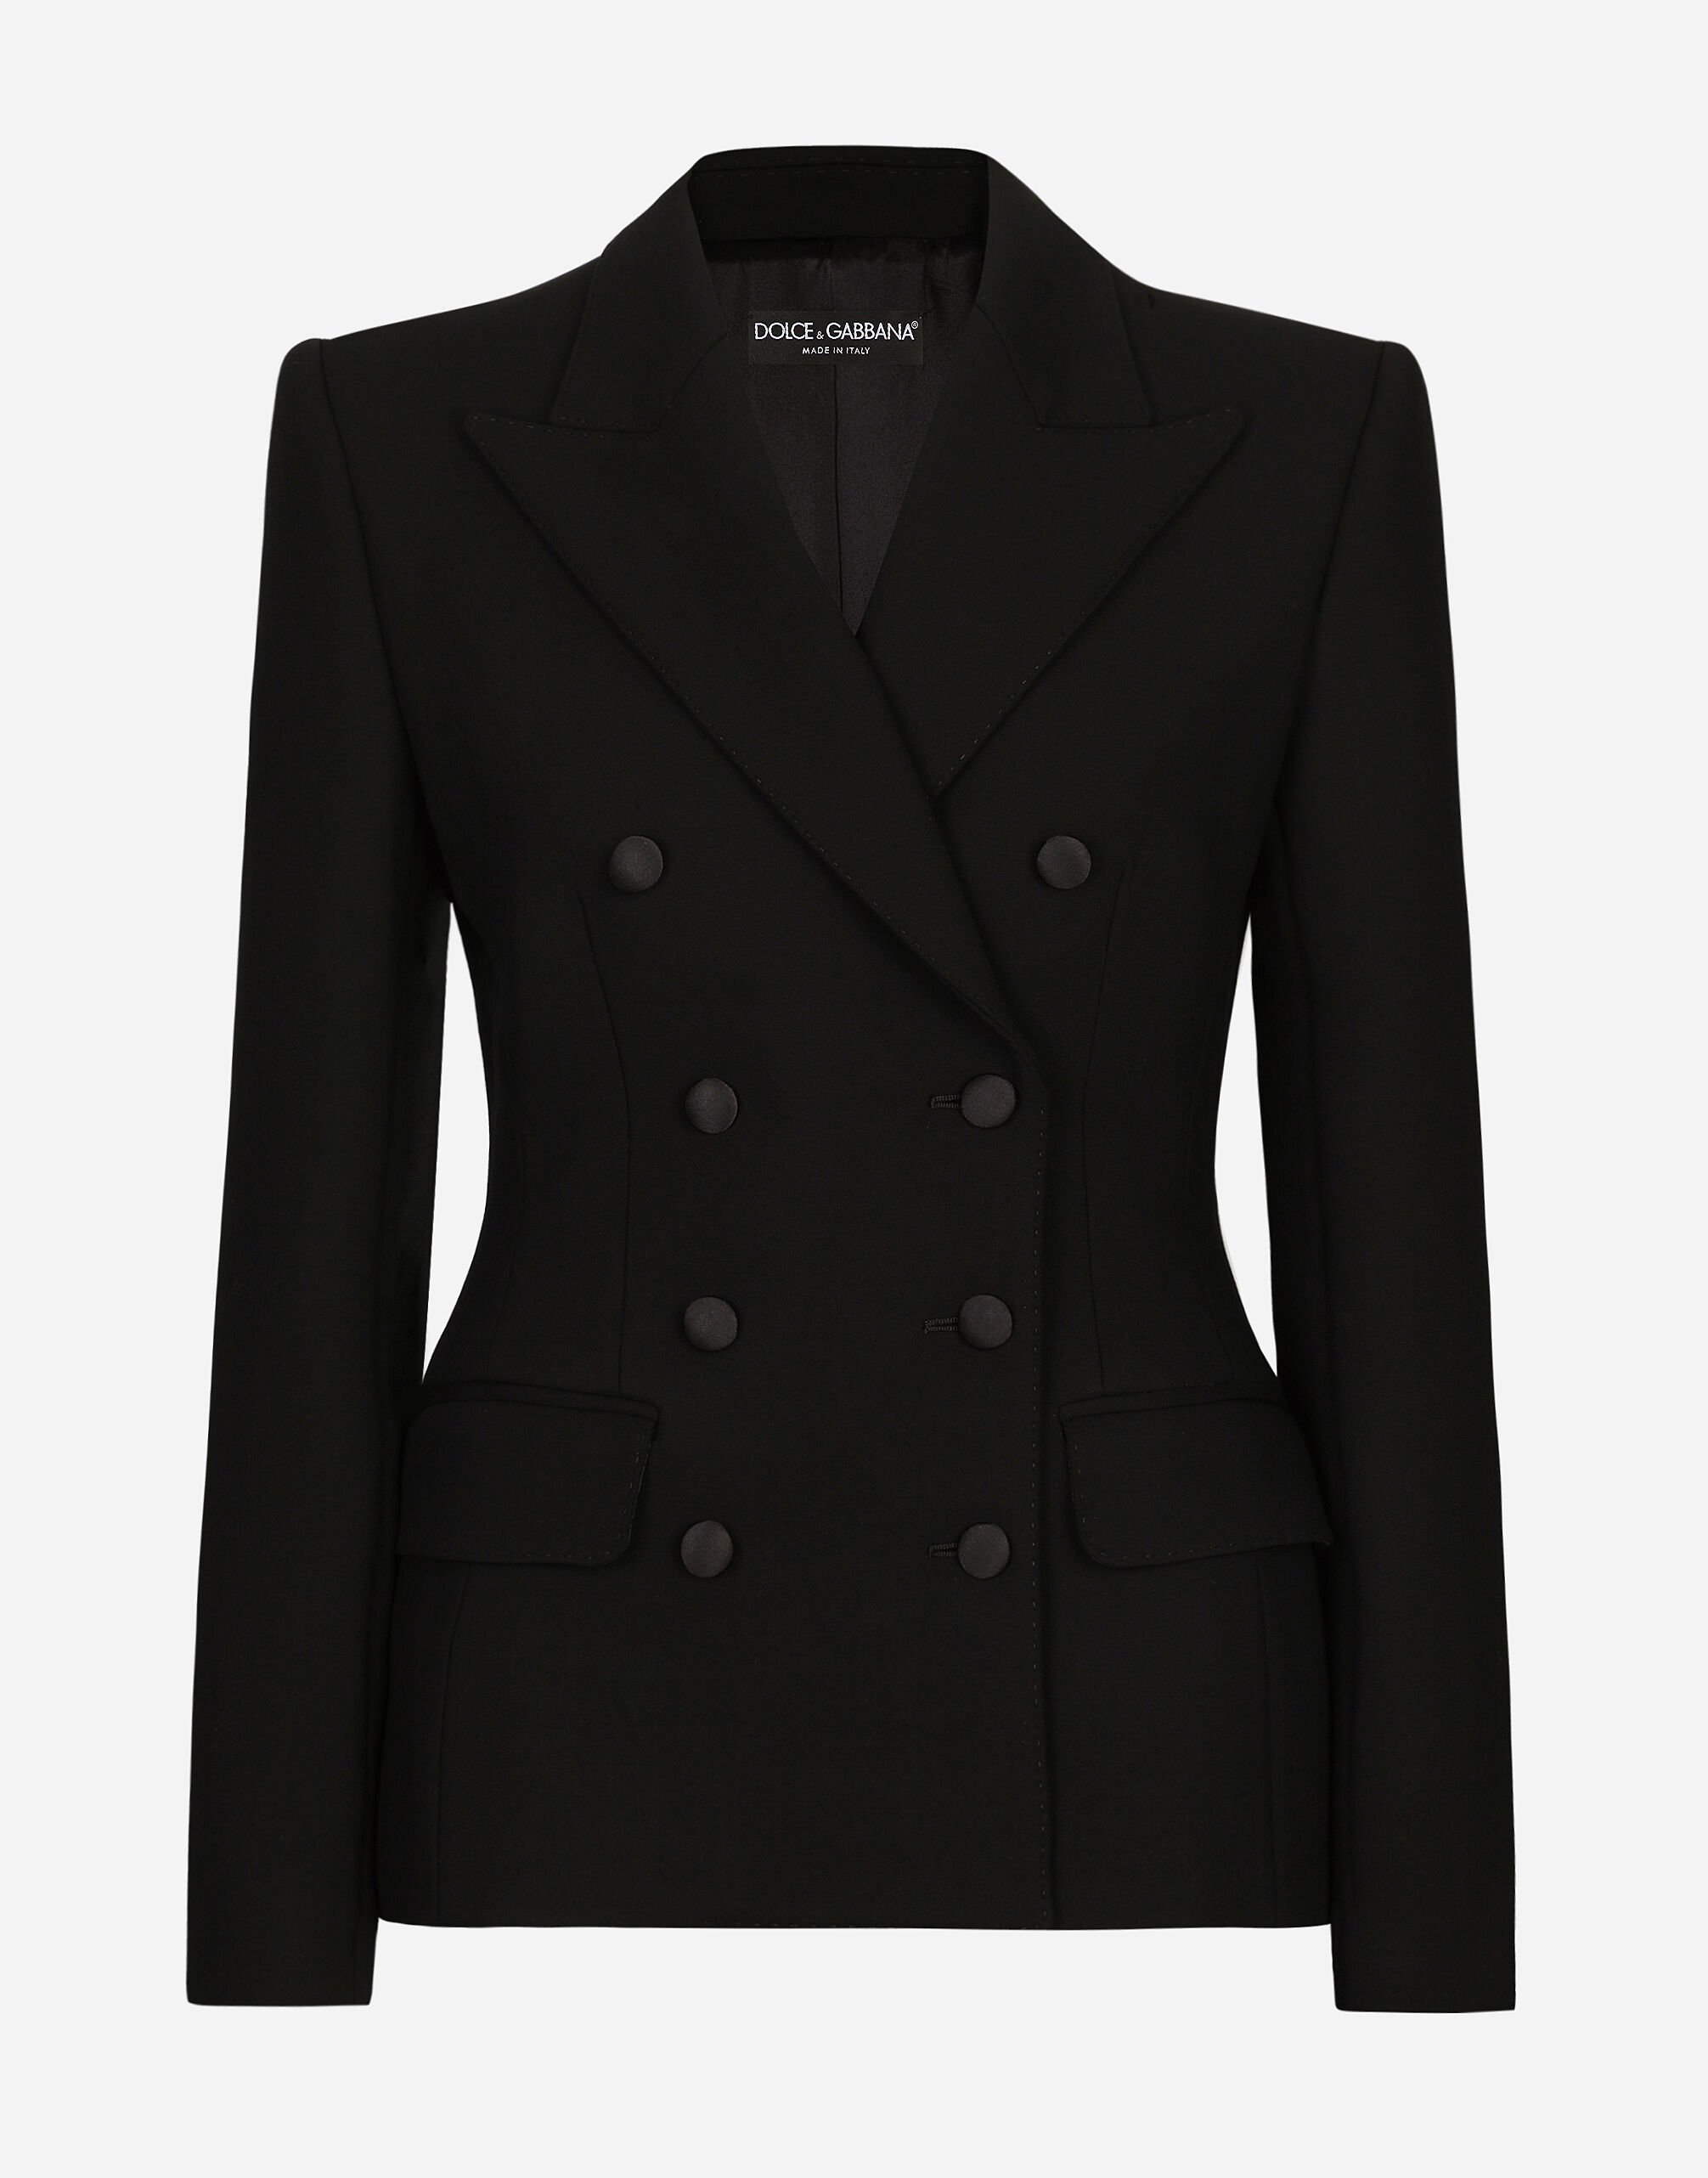 Dolce & Gabbana Zweireihige Jacke Dolce aus Wolle mit Wattierung an den Seiten Black F6JFFTMLRAB